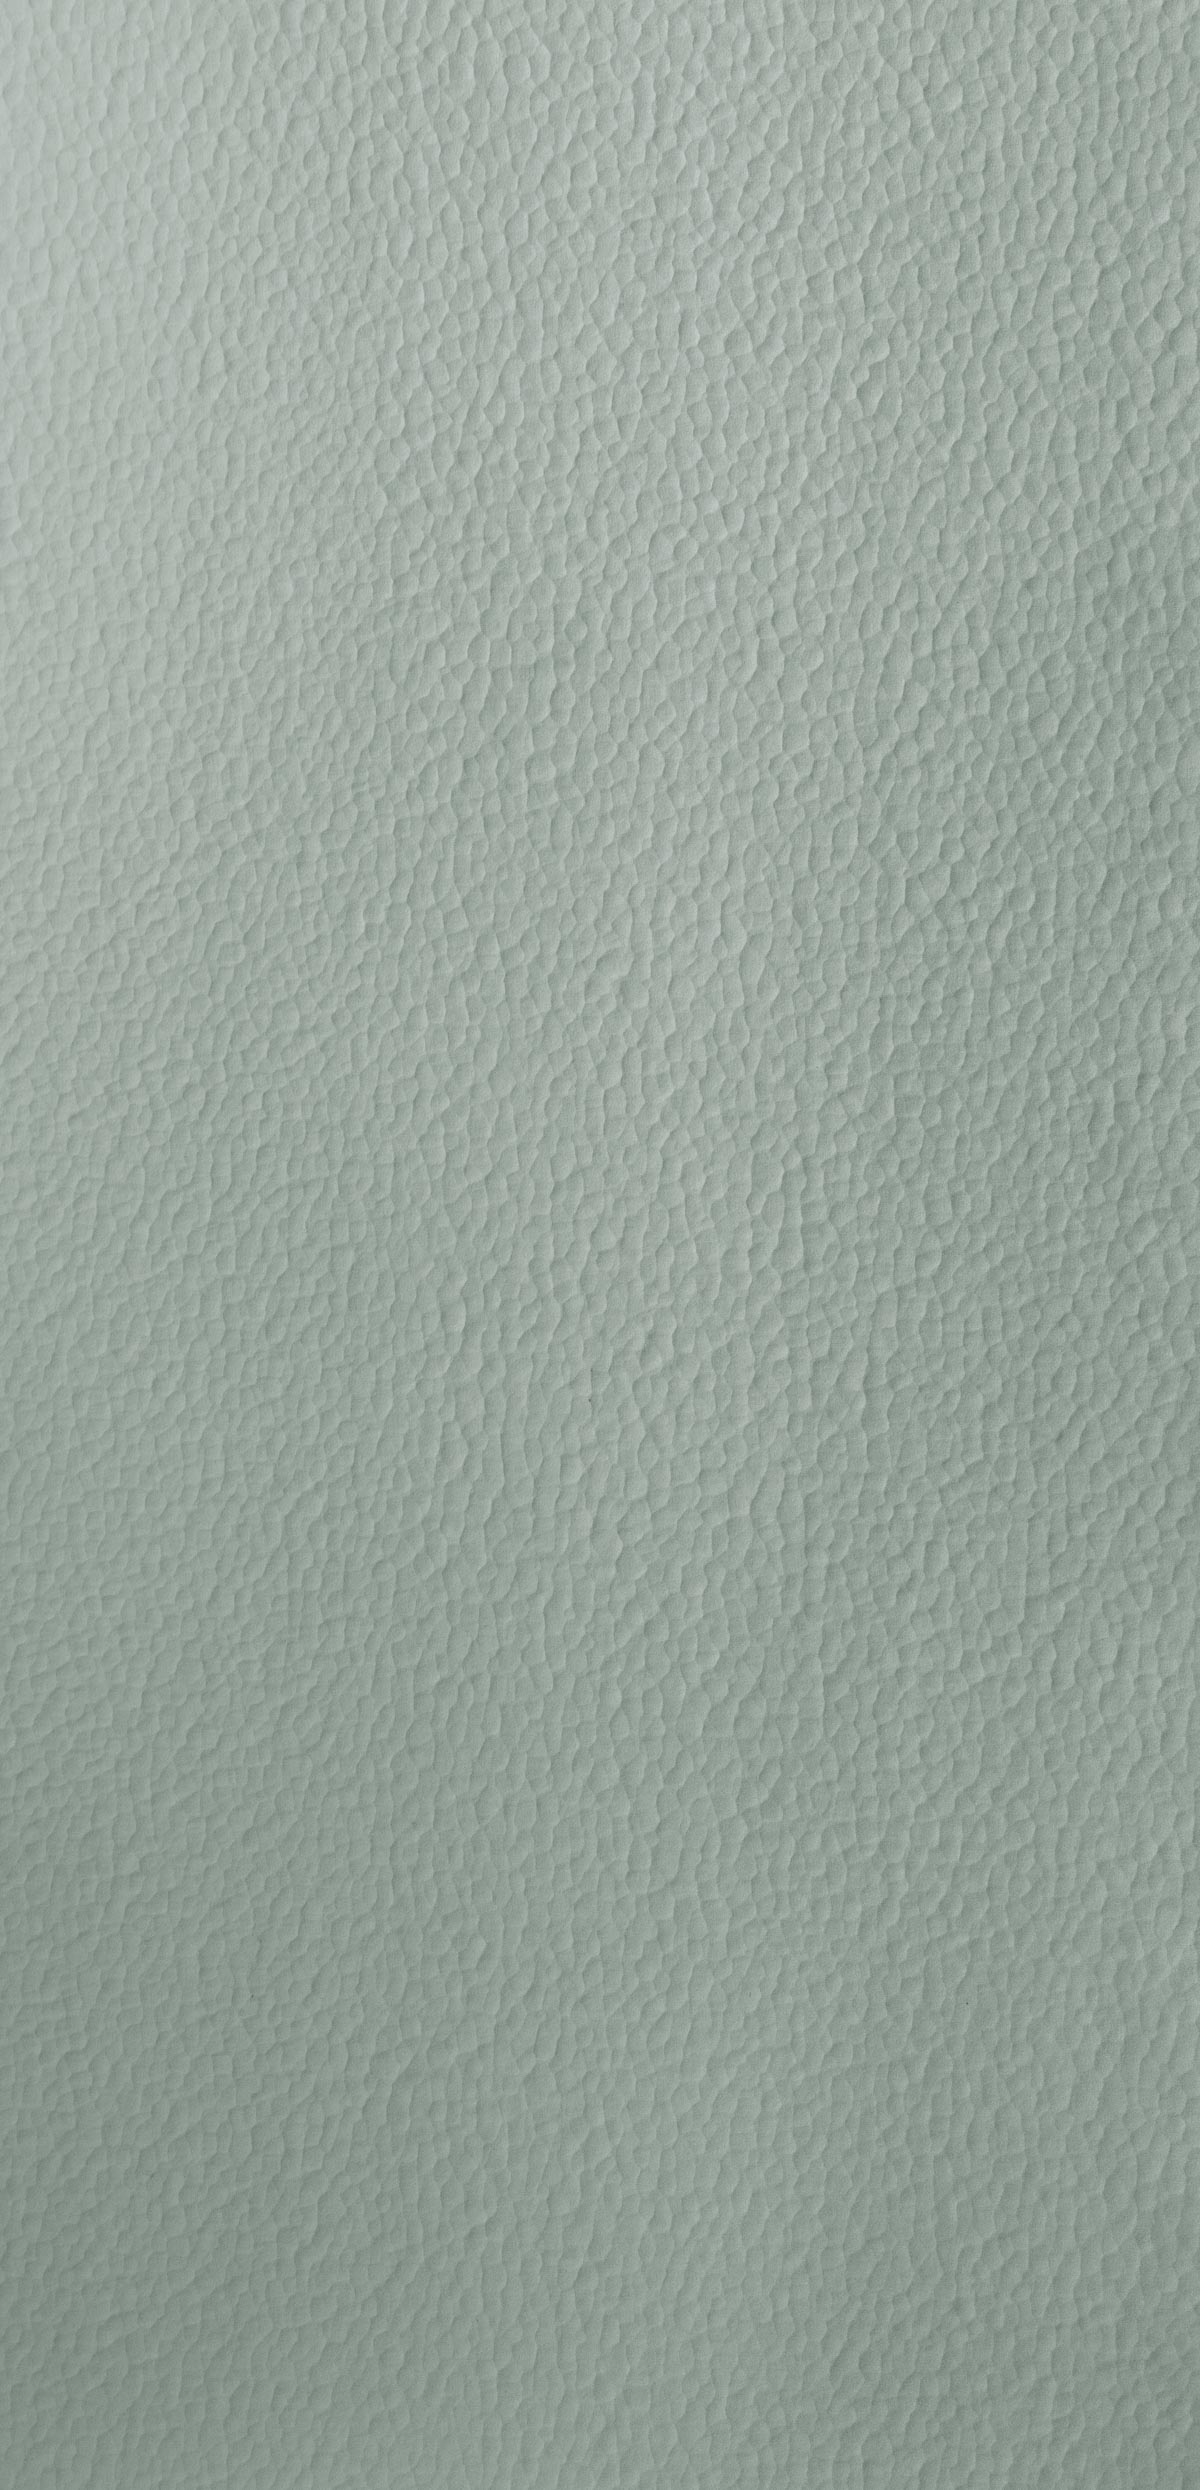 Plat à four rectangulaire gris inox 29x21,5 cm - ECOTEL AIX